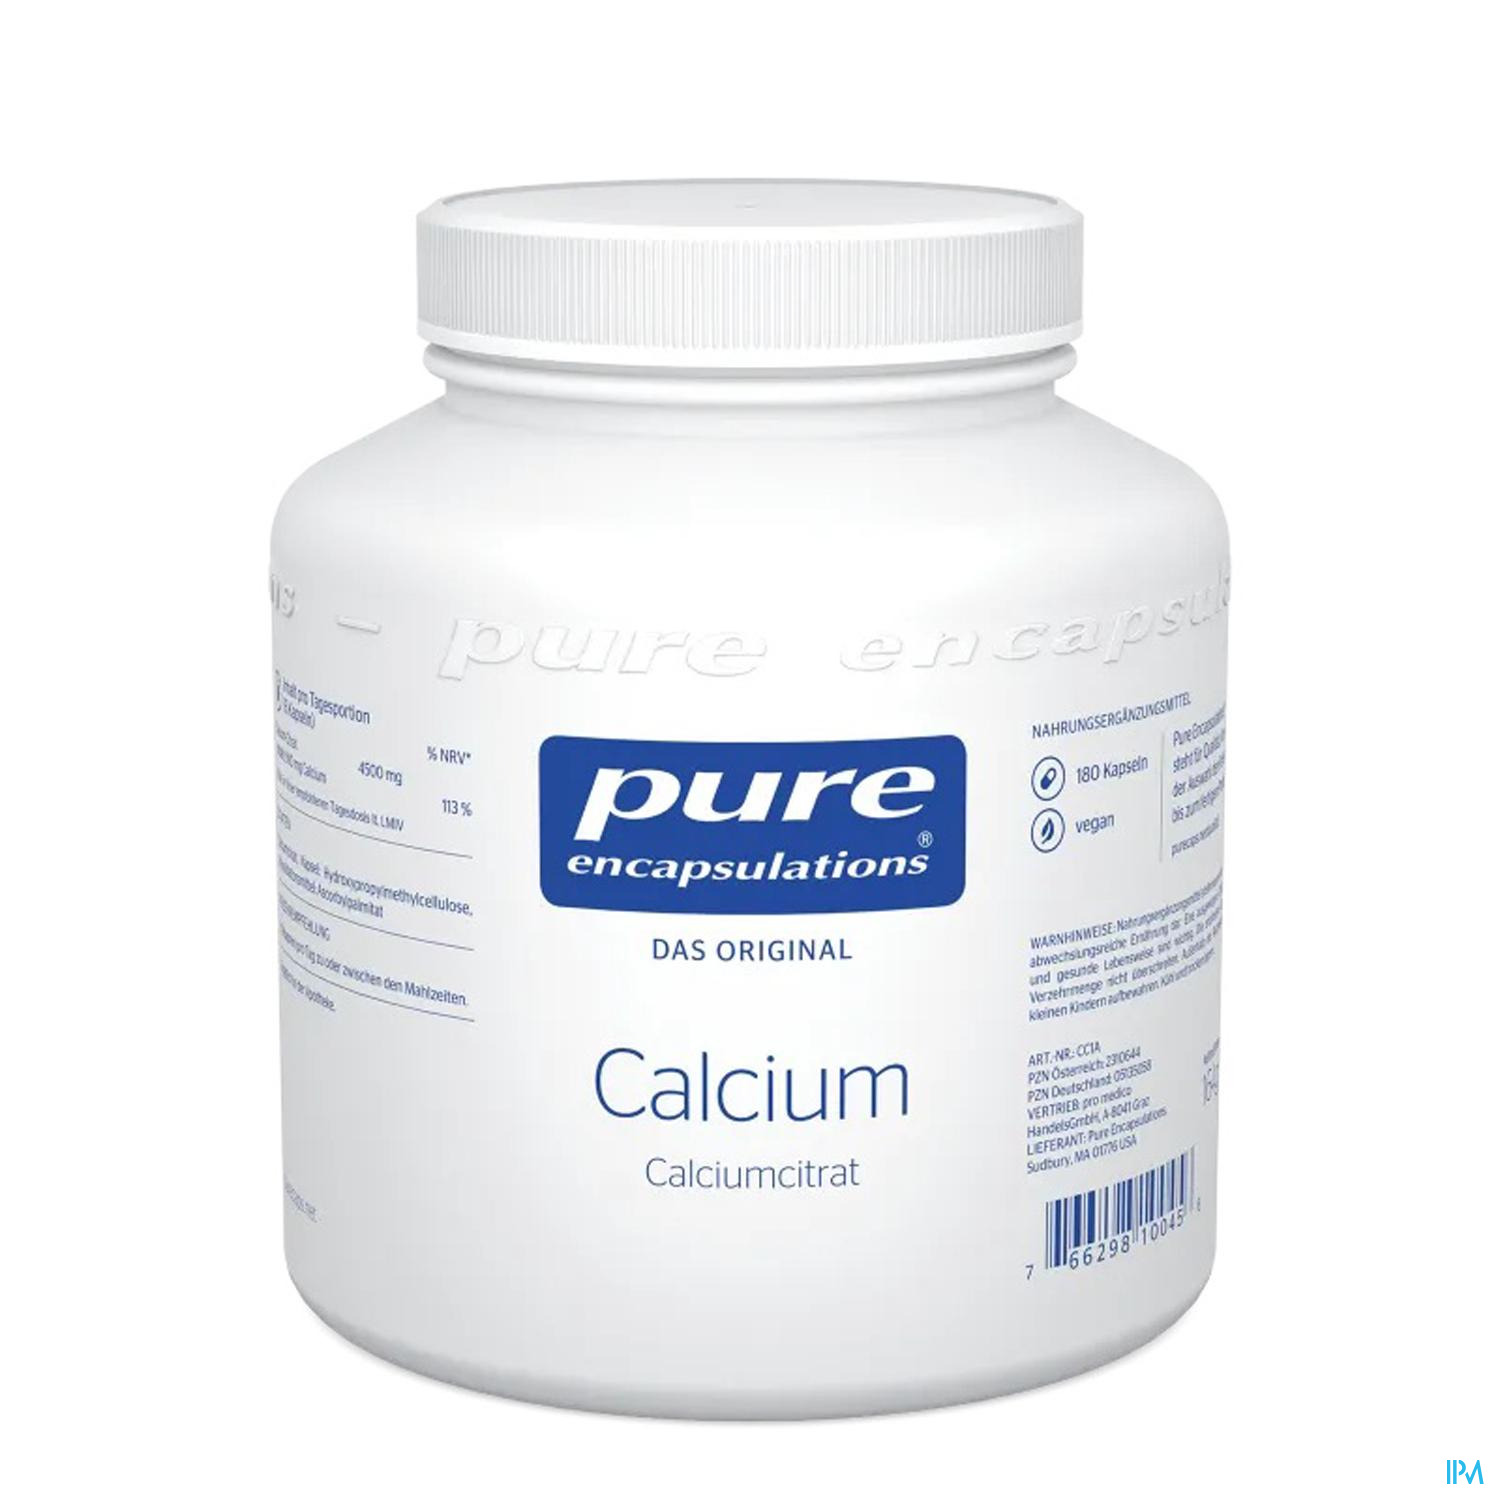 Pure Encapsulations Calcium 180 Kapseln